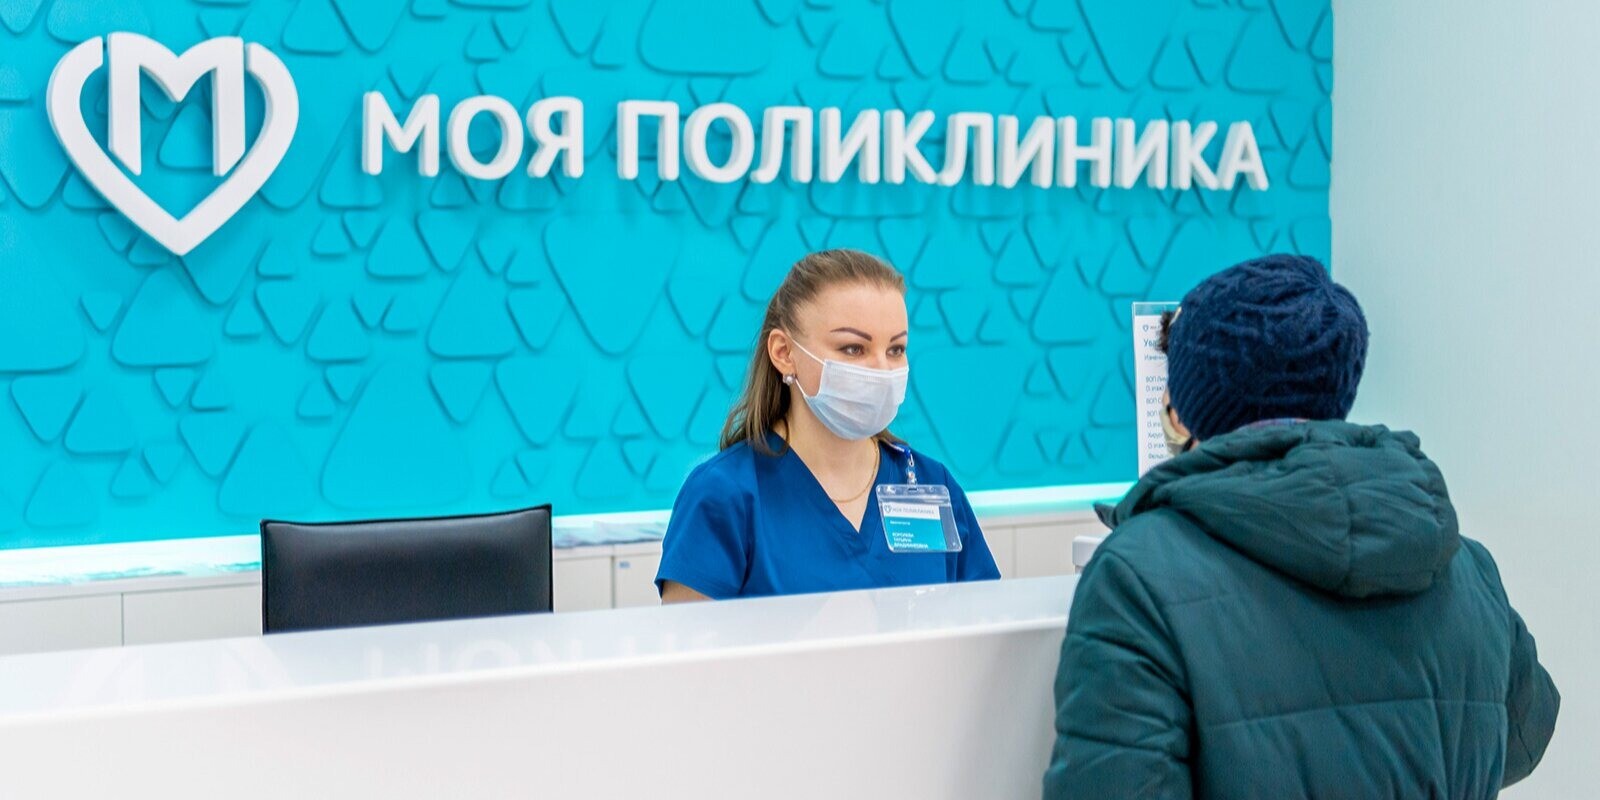 Расходы на программу "Столичное здравоохранение" в ближайший год превысят 500 млрд рублей